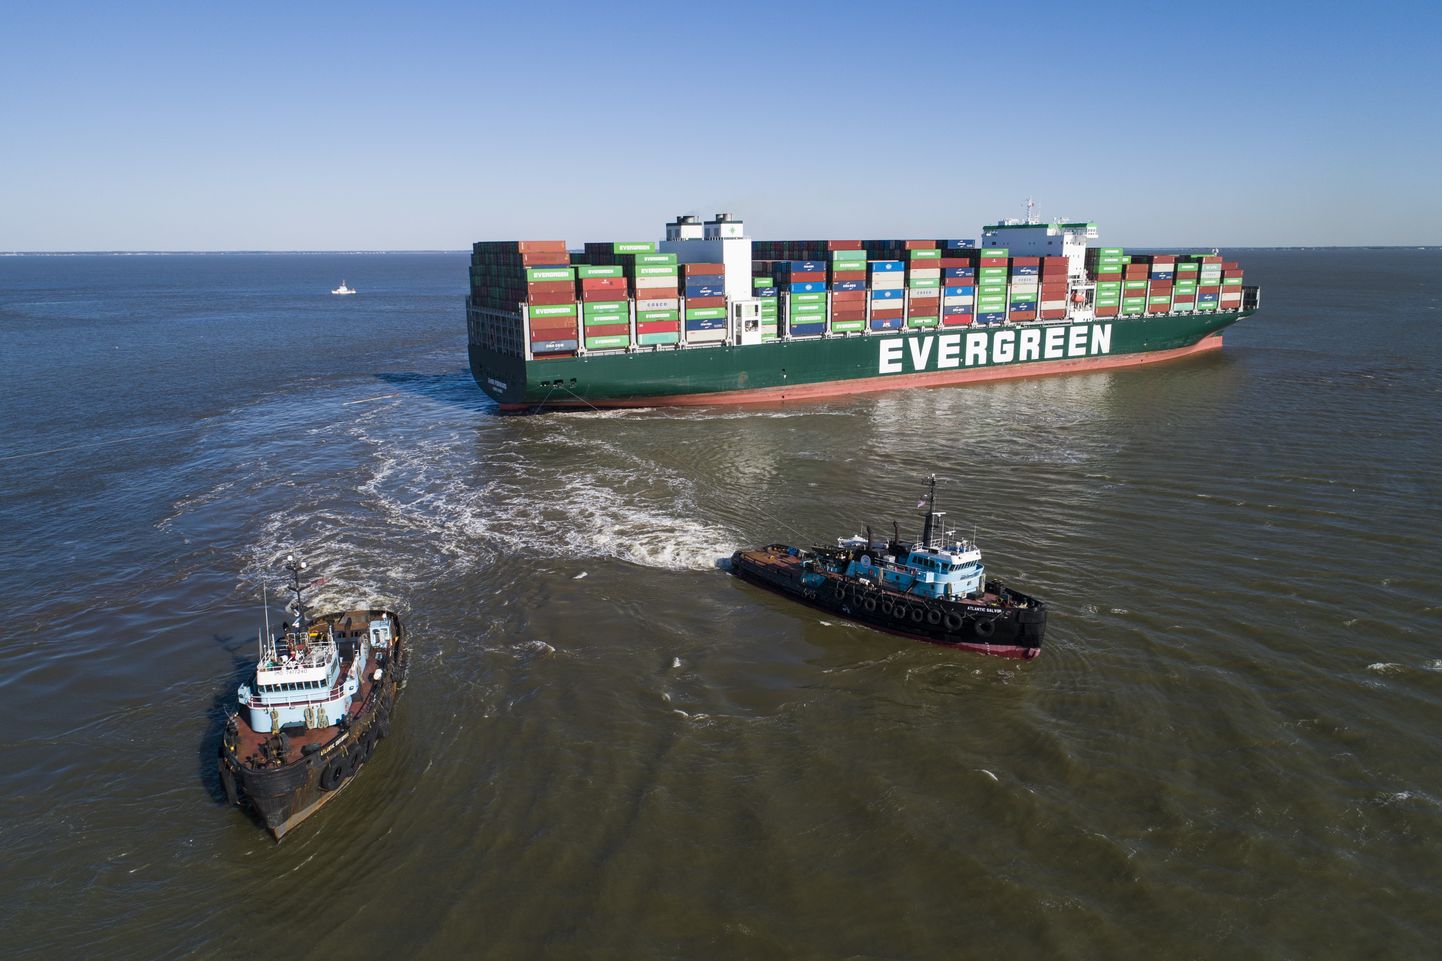 Vaatamata laevafirma Evergreen palgatud päästjate katsetele konteinerilaev madalalt lahti tõmmata ei ole laeva liikuma saadud ning selle massi vähendamiseks hakatakse konteinereid teistele laevadele ümber laadima.
EPA/JIM LO SCALZO